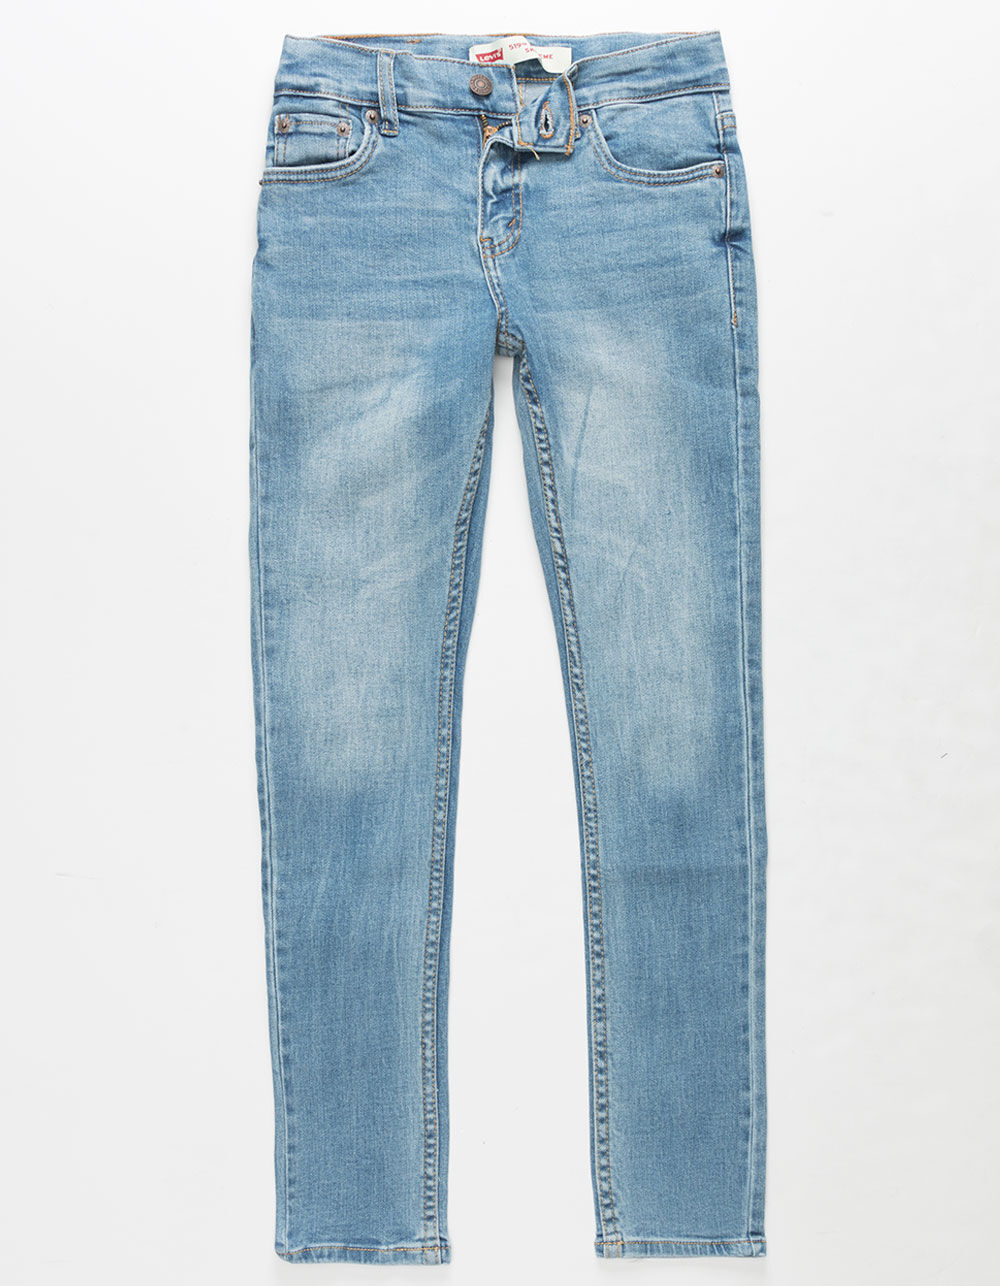 LEVI'S 519 Extreme Skinny Boys Stretch Jeans - Blue | Tillys